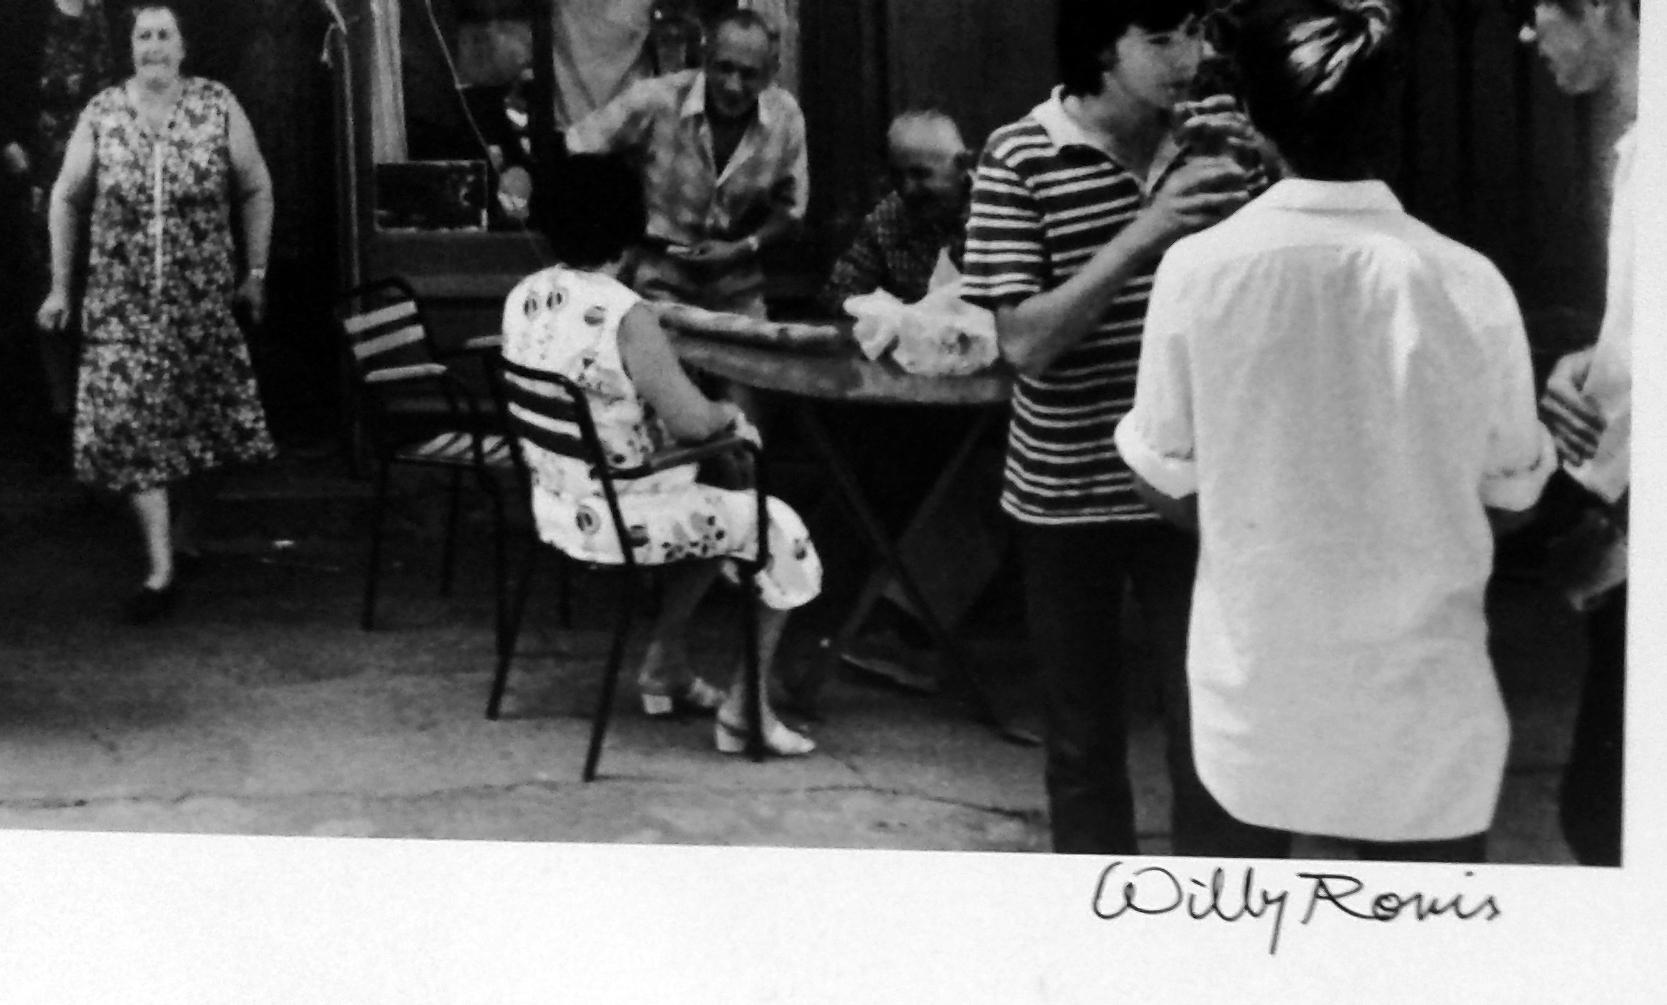 Le Café de France, Zeitgenössische französische Straßenfotografie in Schwarz-Weiß, 1970er Jahre – Photograph von Willy Ronis